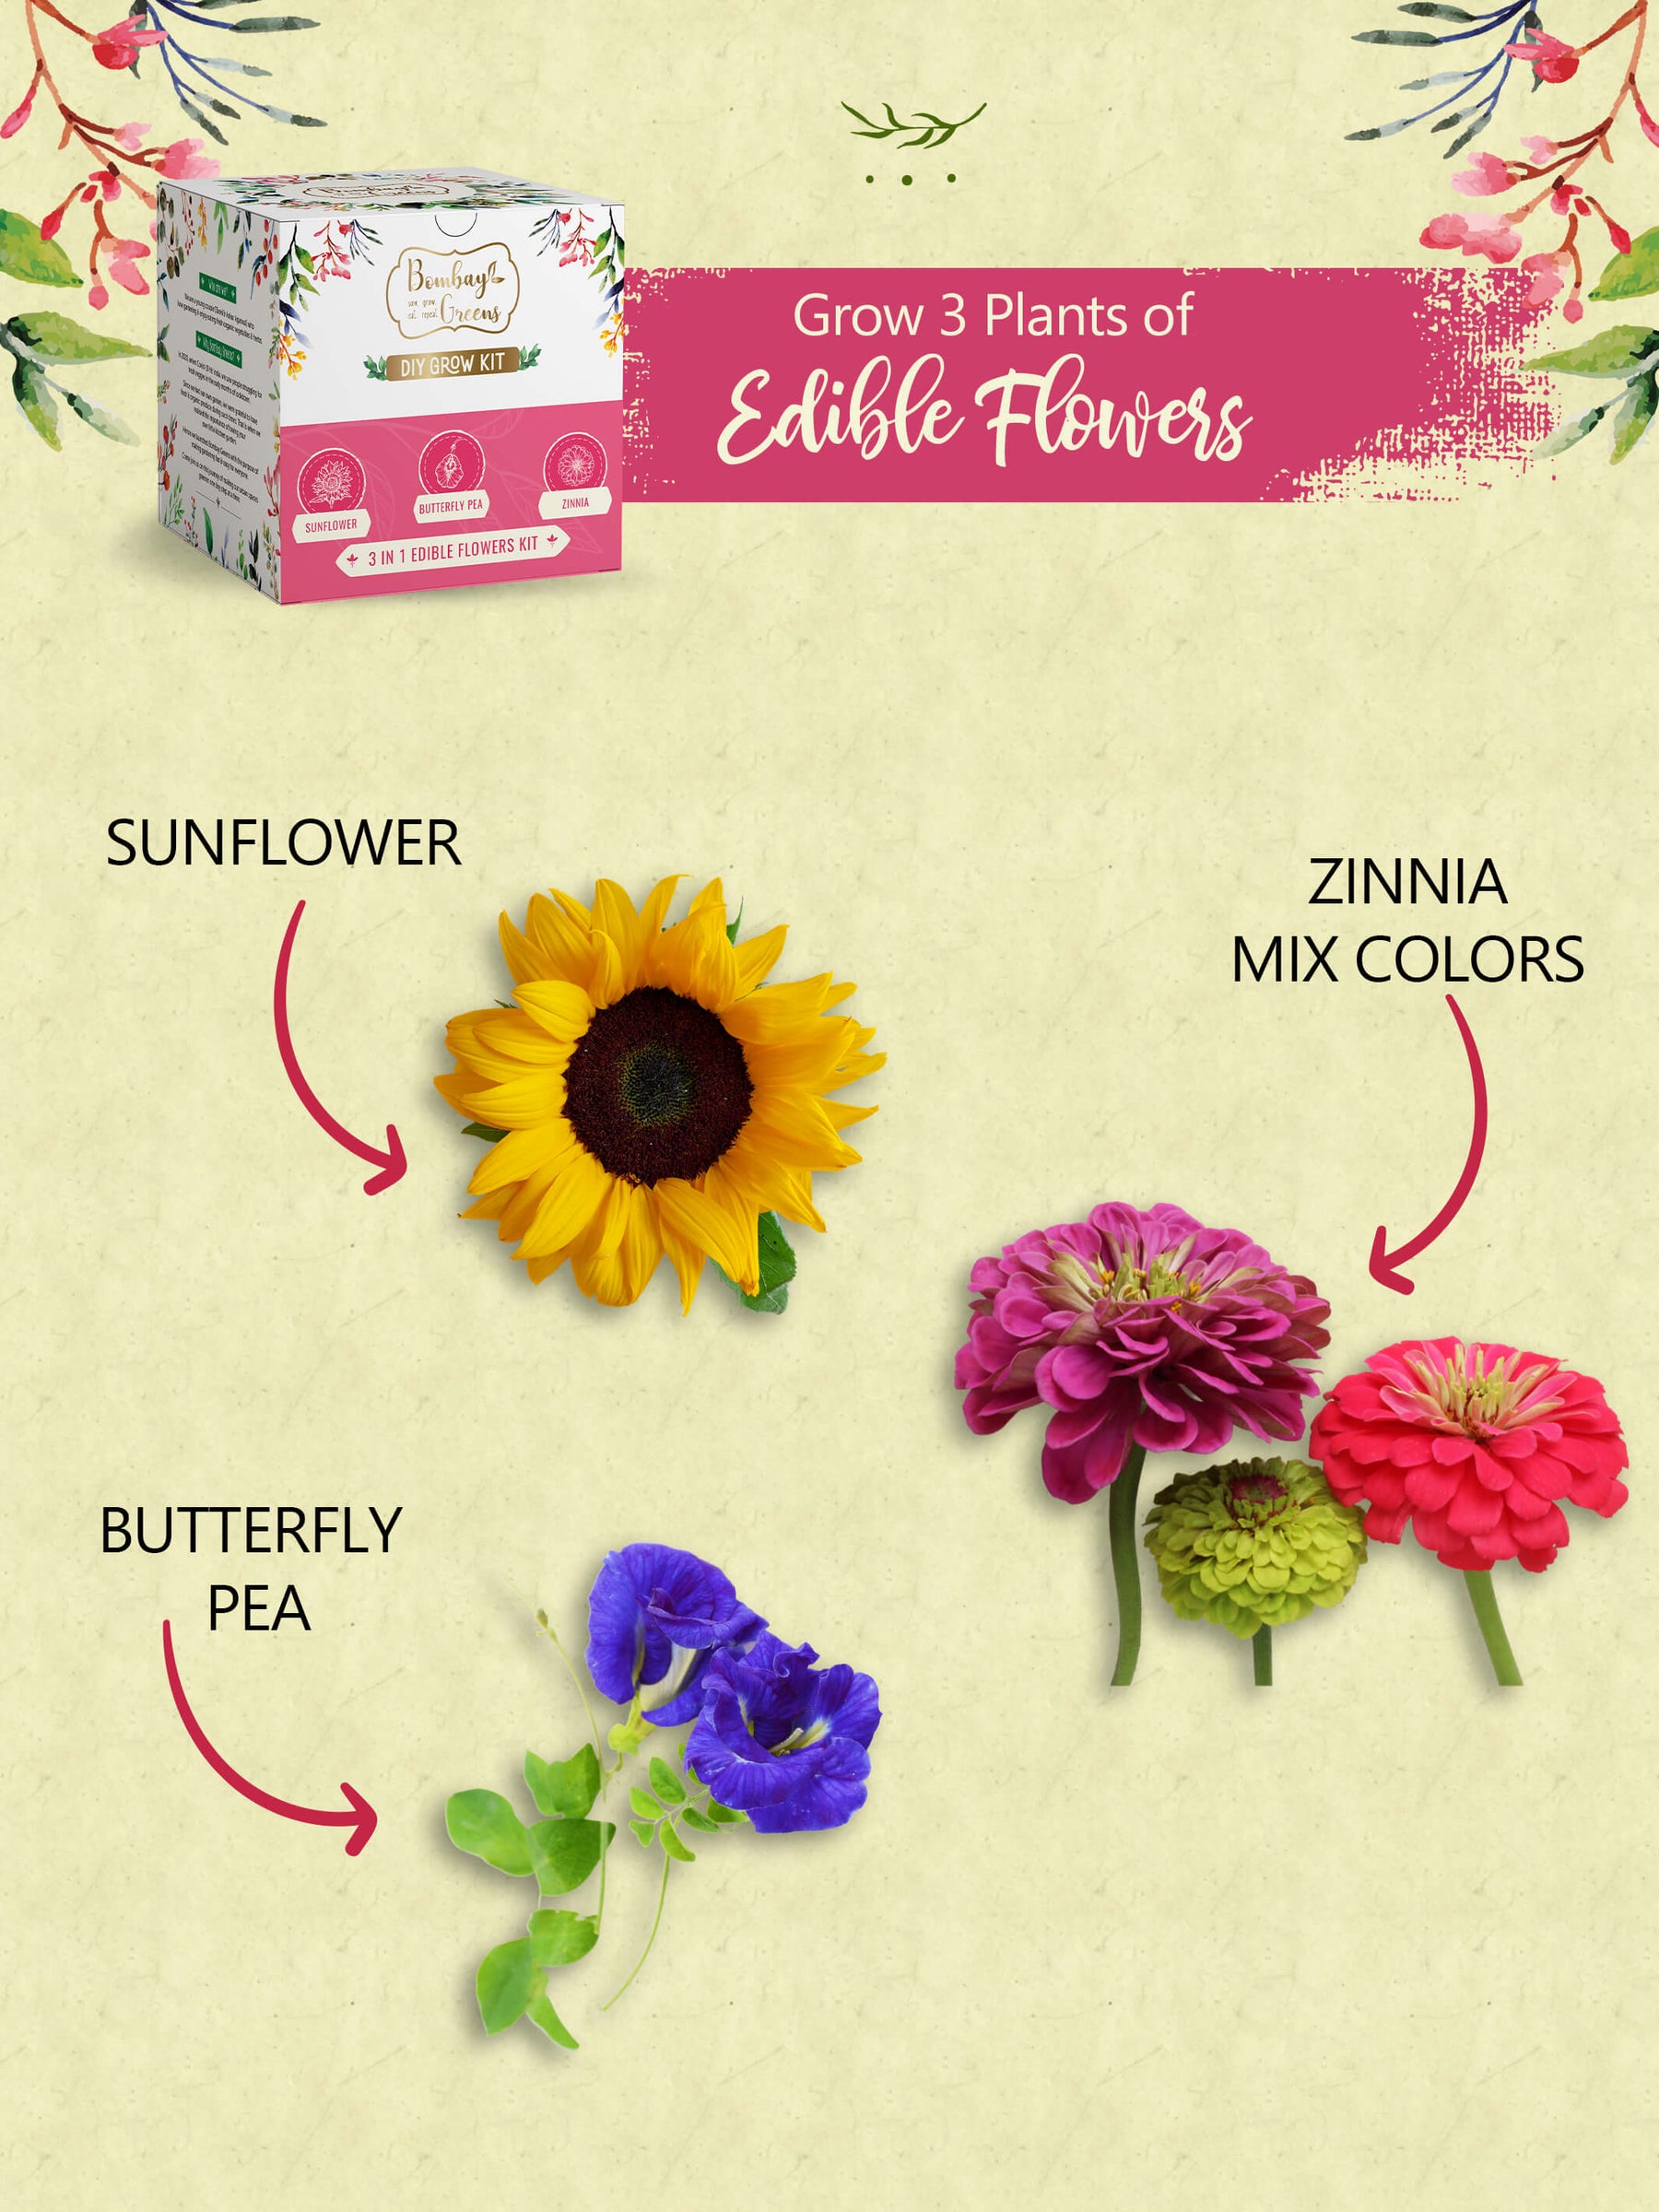 Edible Flower Blend, Wildflower Seed